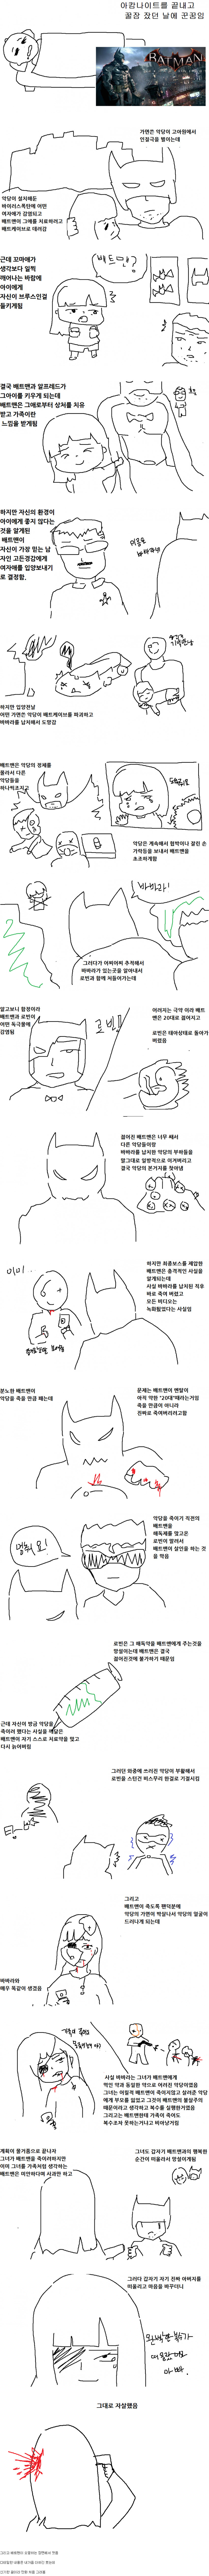 Screenshot_2019-03-06 아캄나이트 하고 배트맨 꿈 꾼 만화 - 카툰-연재 갤러리.jpg